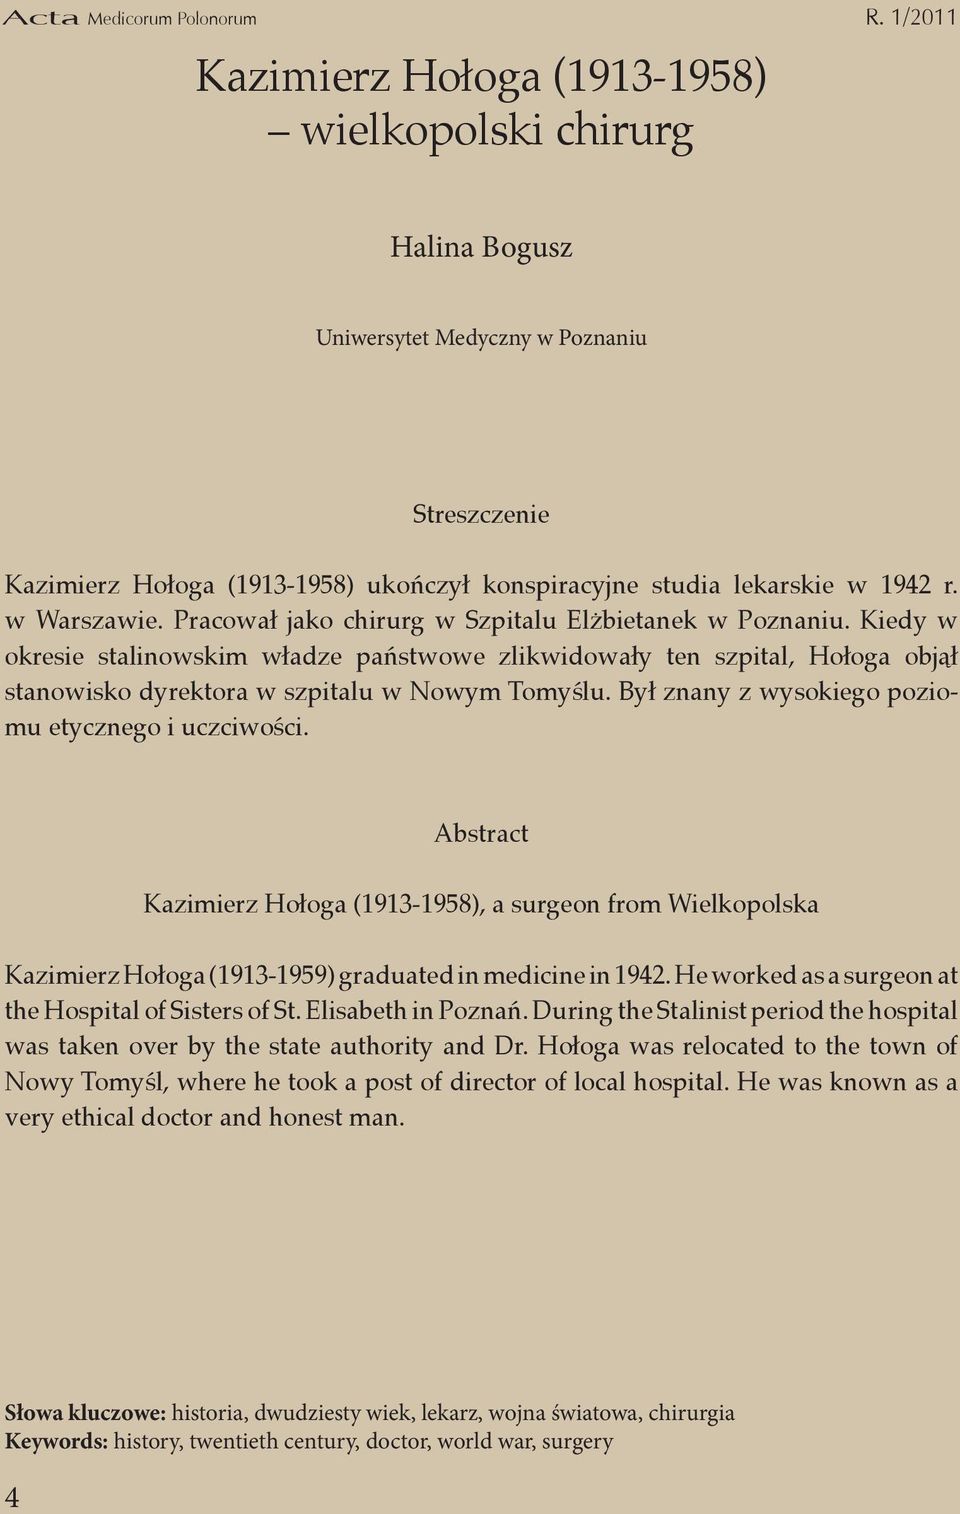 Był znany z wysokiego poziomu etycznego i uczciwości. Kazimierz Hołoga (1913-1958), a surgeon from Wielkopolska Kazimierz Hołoga (1913-1959) graduated in medicine in 1942.